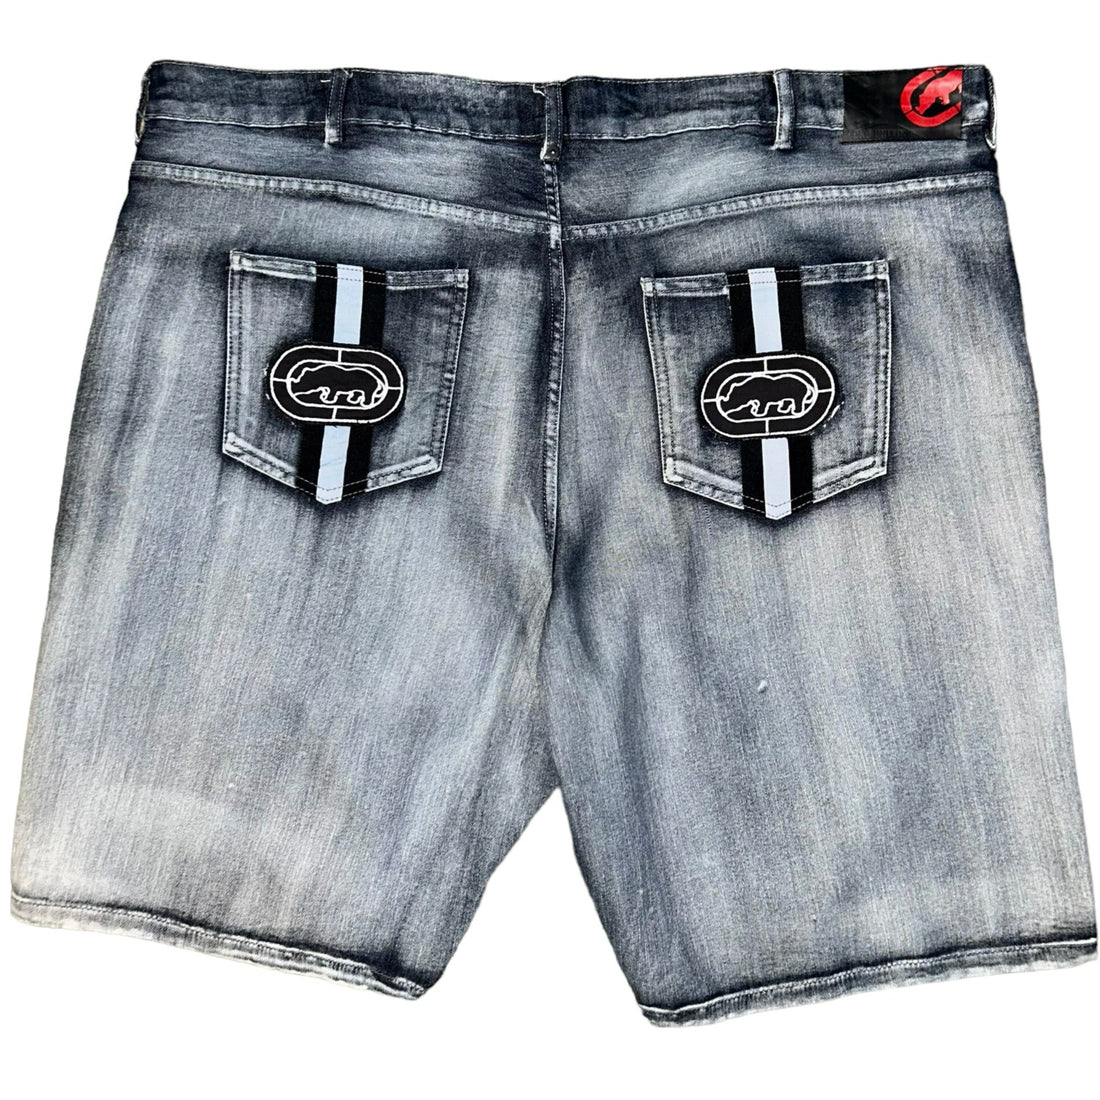 Ecko Unlimited Vintage Baggy Shorts (46 US XXXXL)